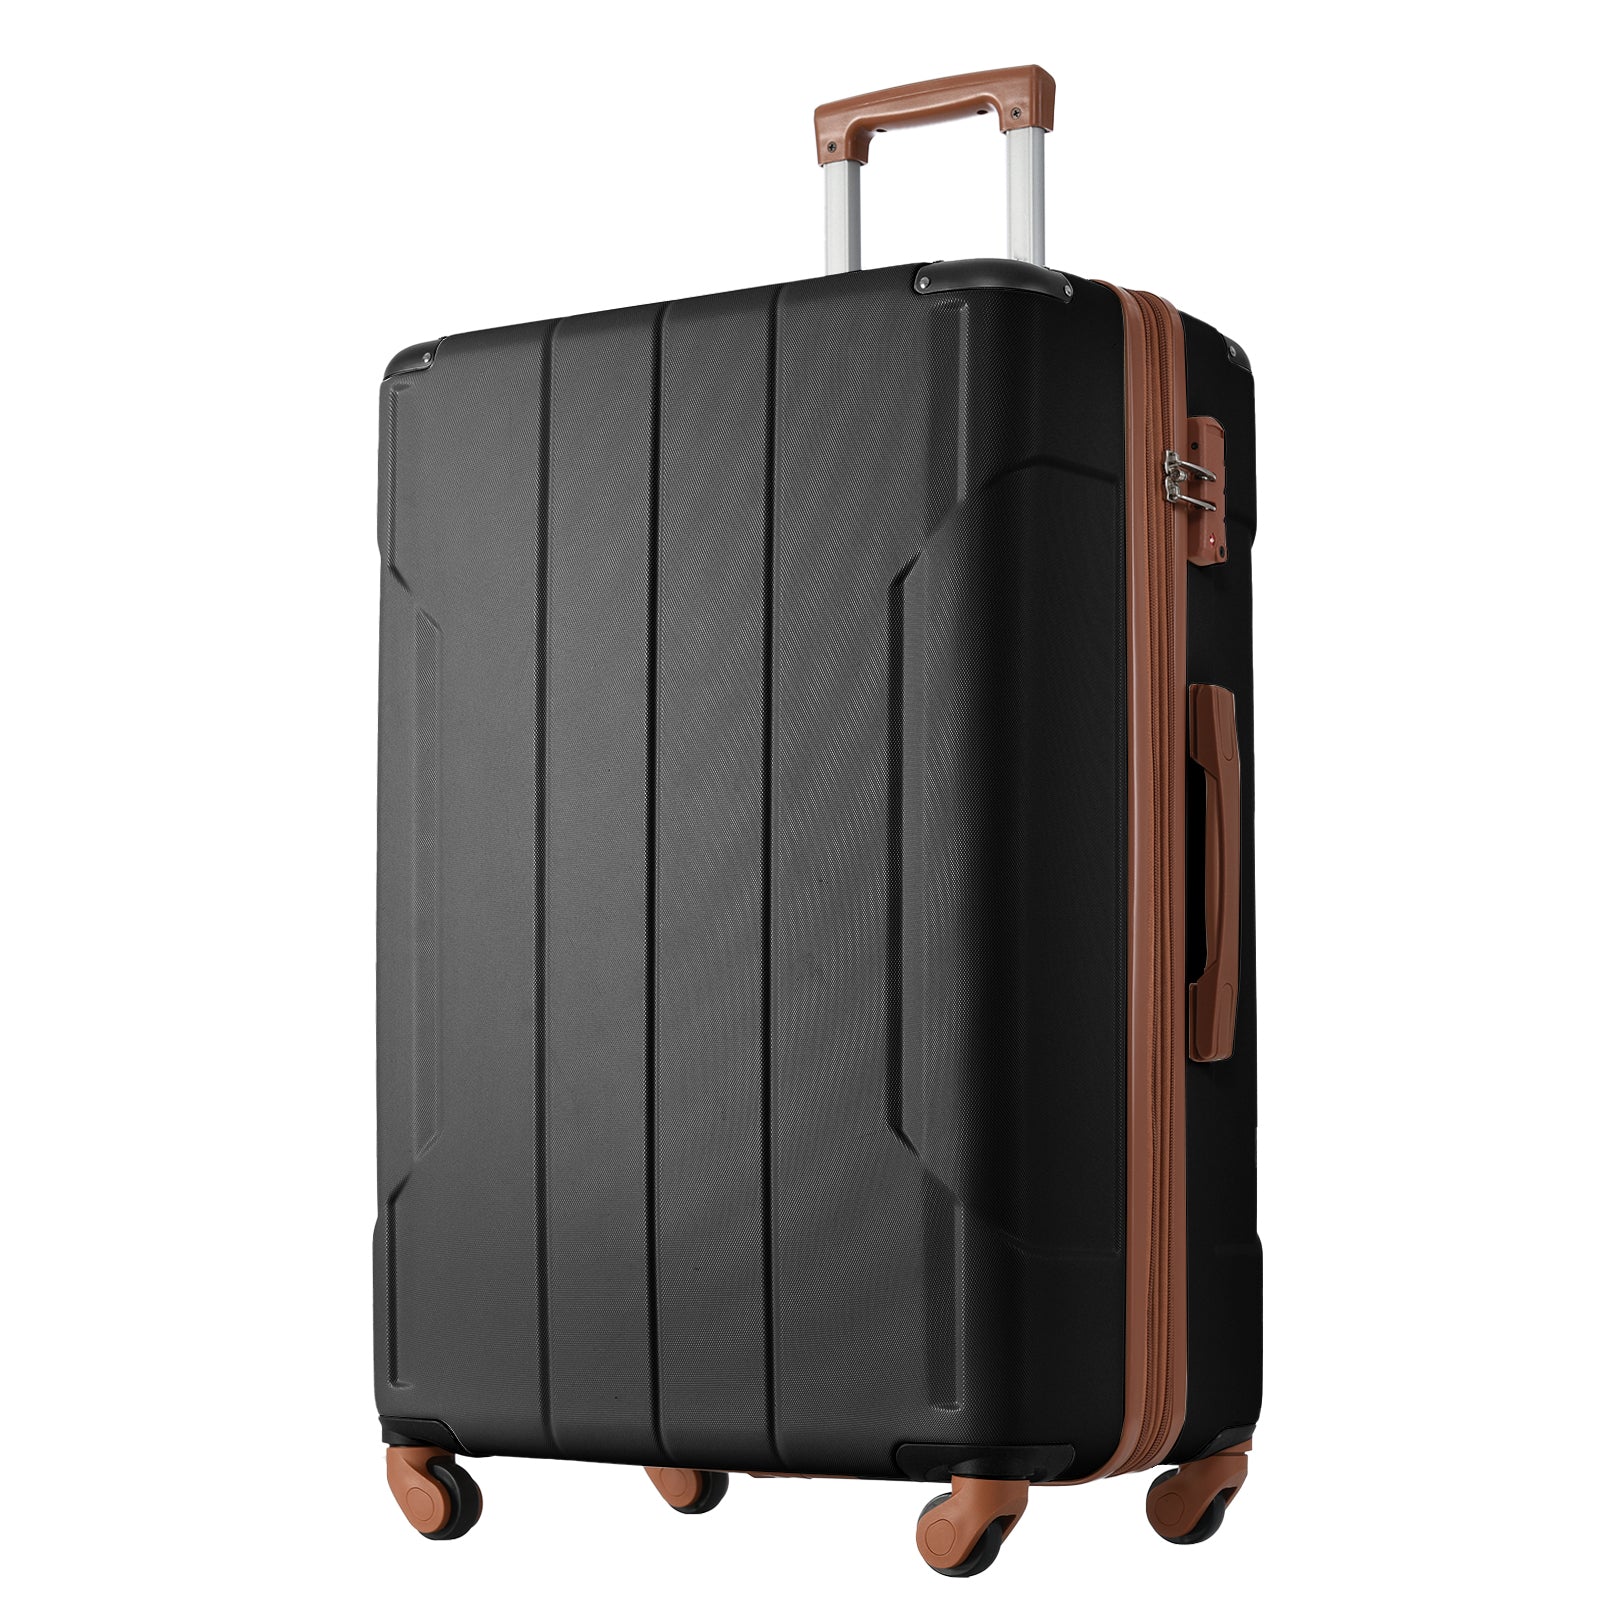 Hardside Luggage Sets 2 Piece Suitcase Set